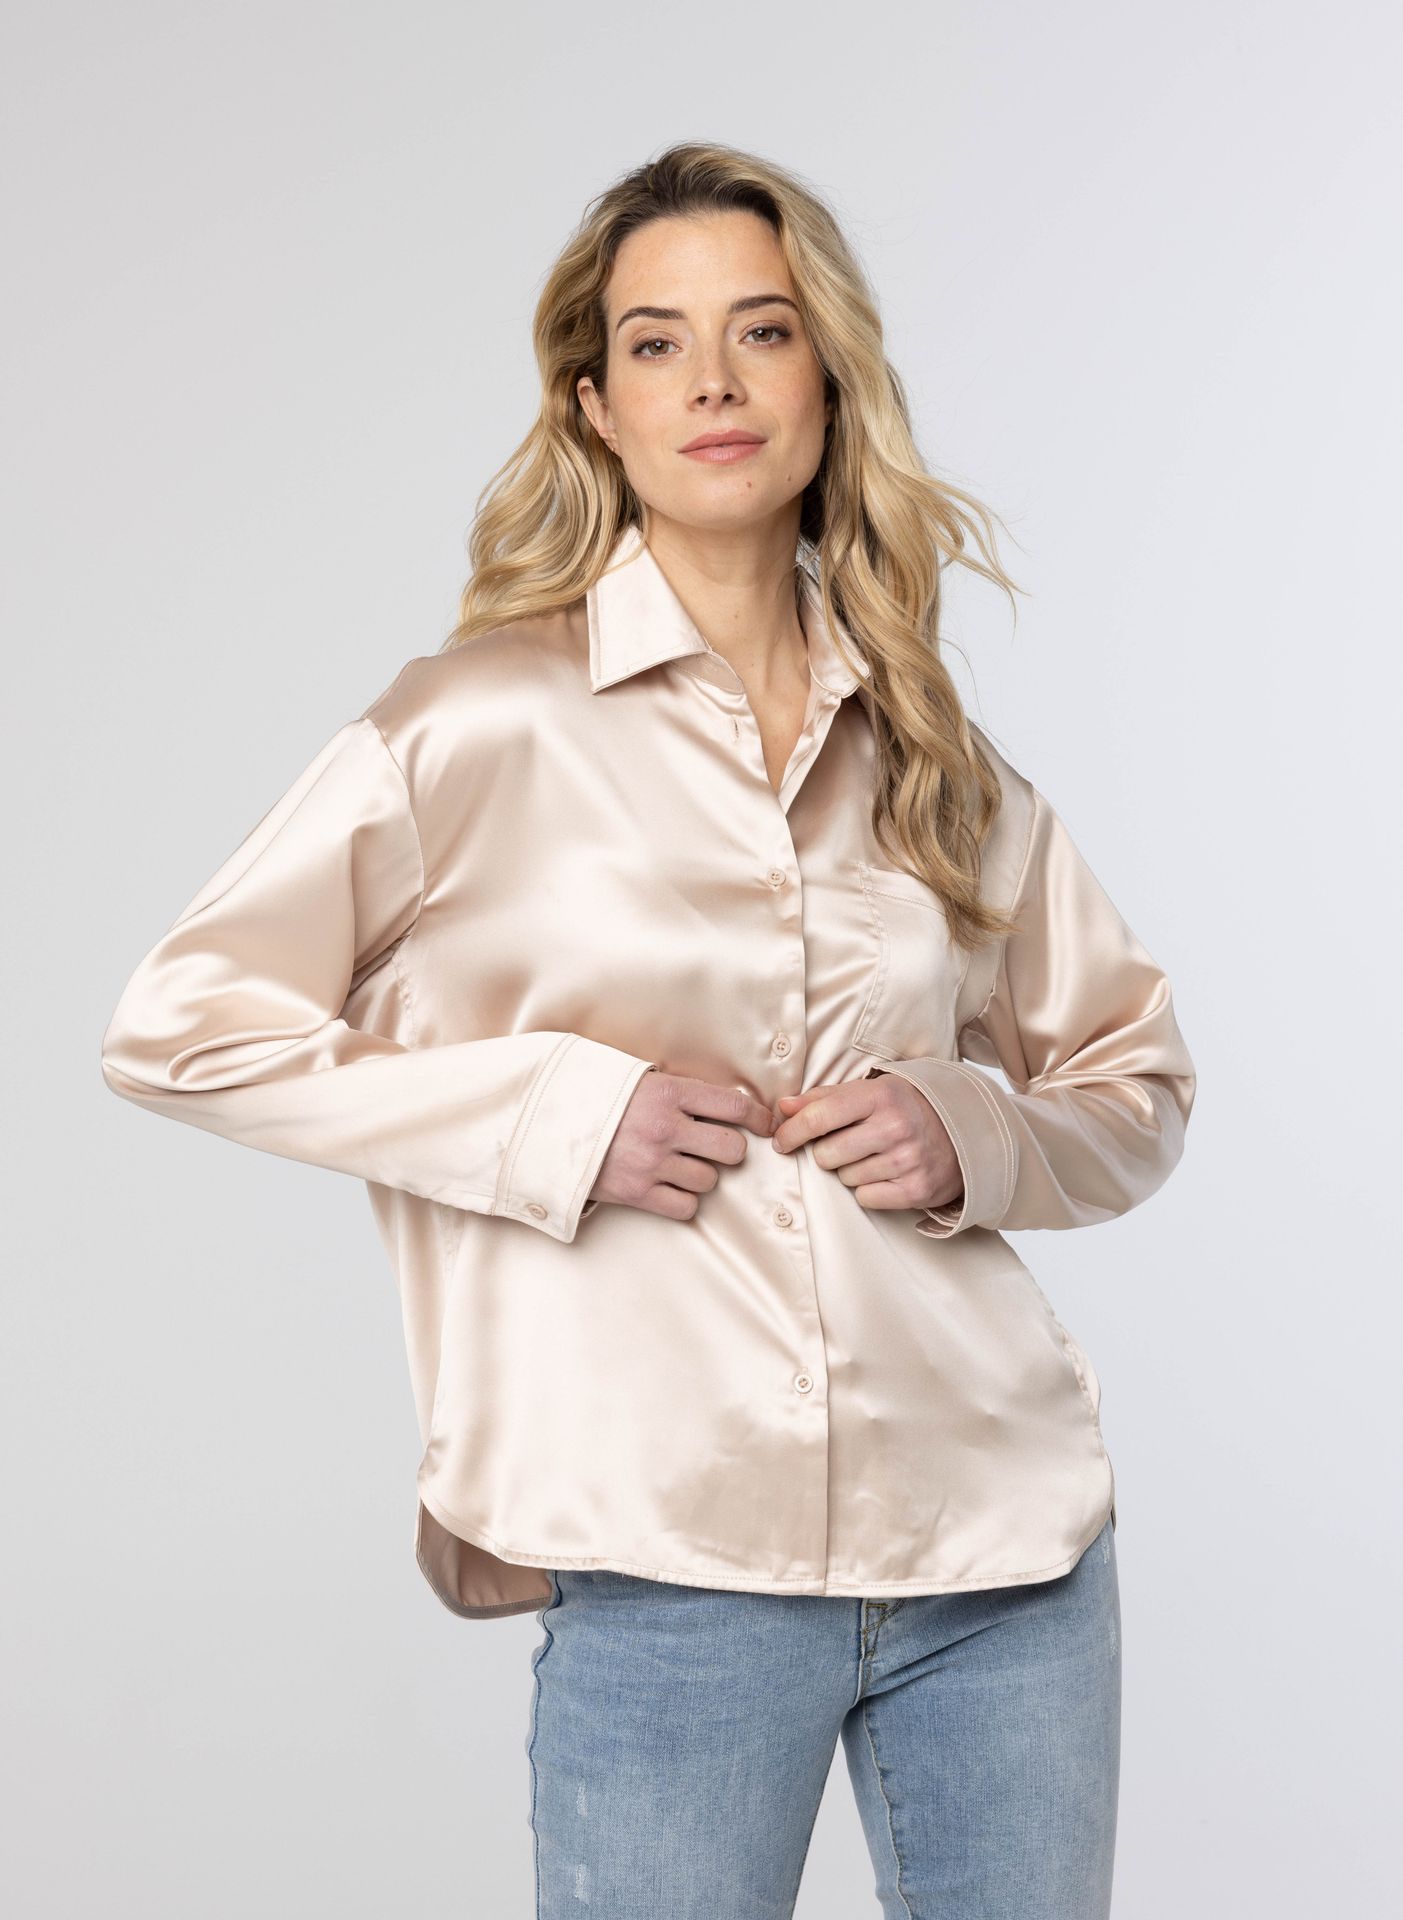 Norah Glanzende ecru blouse ecru 214196-102-42